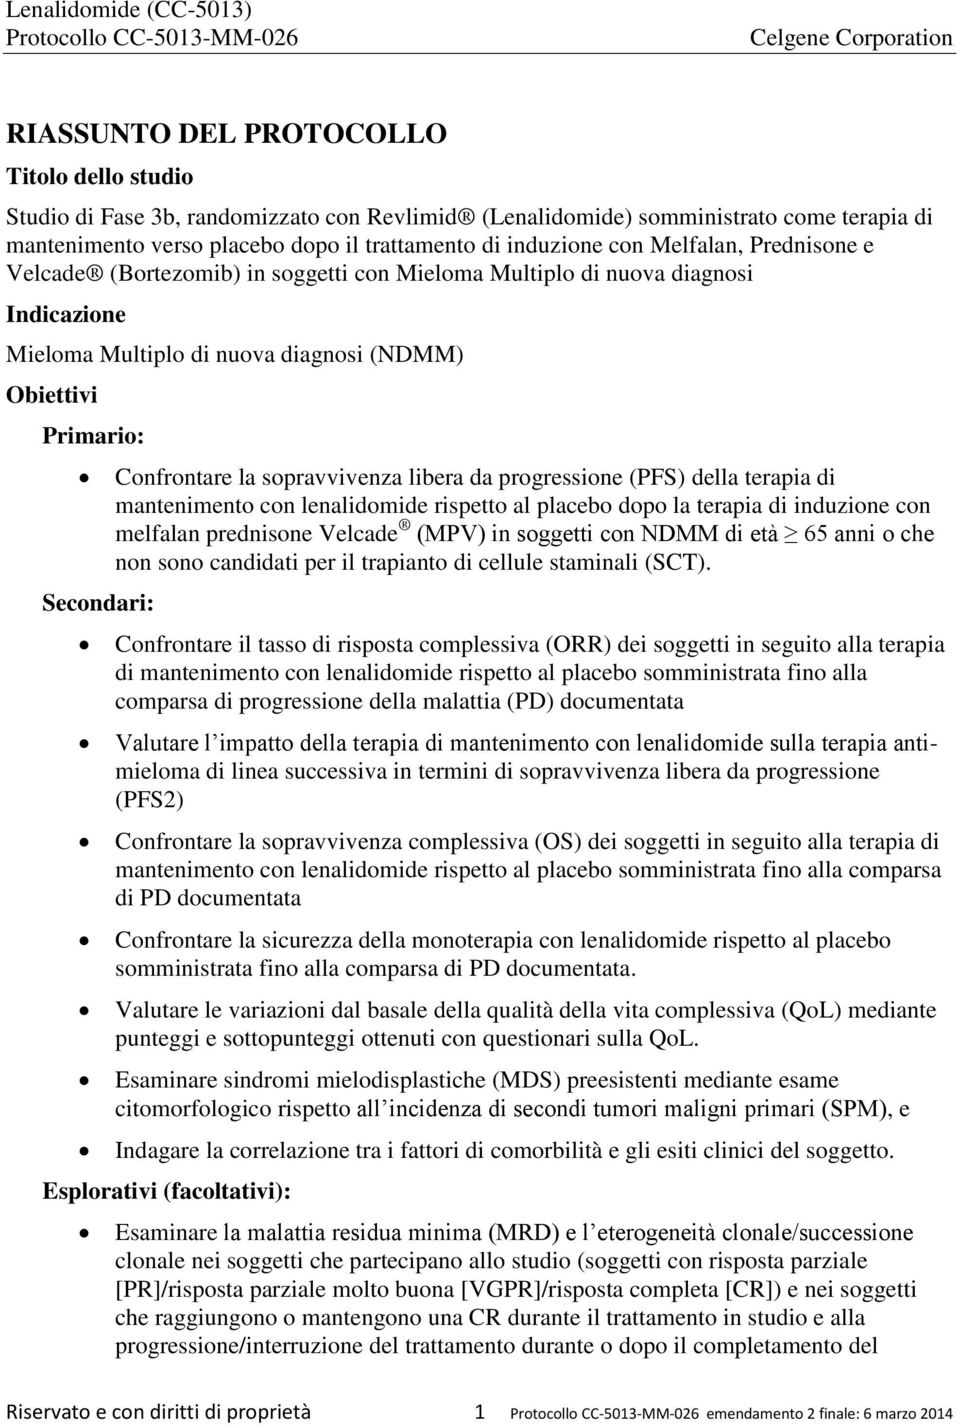 sopravvivenza libera da progressione (PFS) della terapia di mantenimento con lenalidomide rispetto al placebo dopo la terapia di induzione con melfalan prednisone Velcade (MPV) in soggetti con NDMM